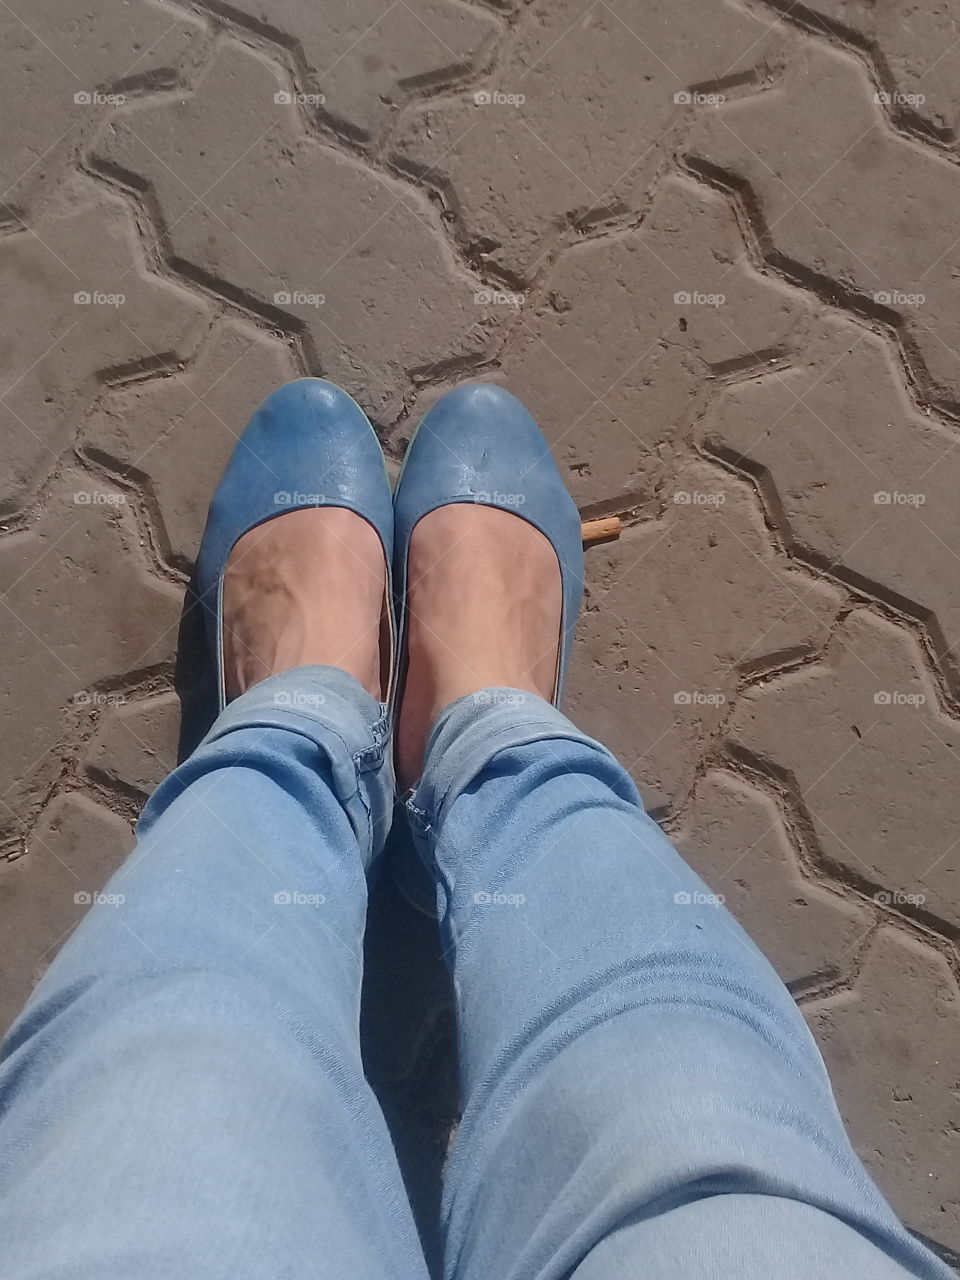 pies de dama calzados con zapatos bajos color azul, aplastando un cigarrillo sobre el pavimento